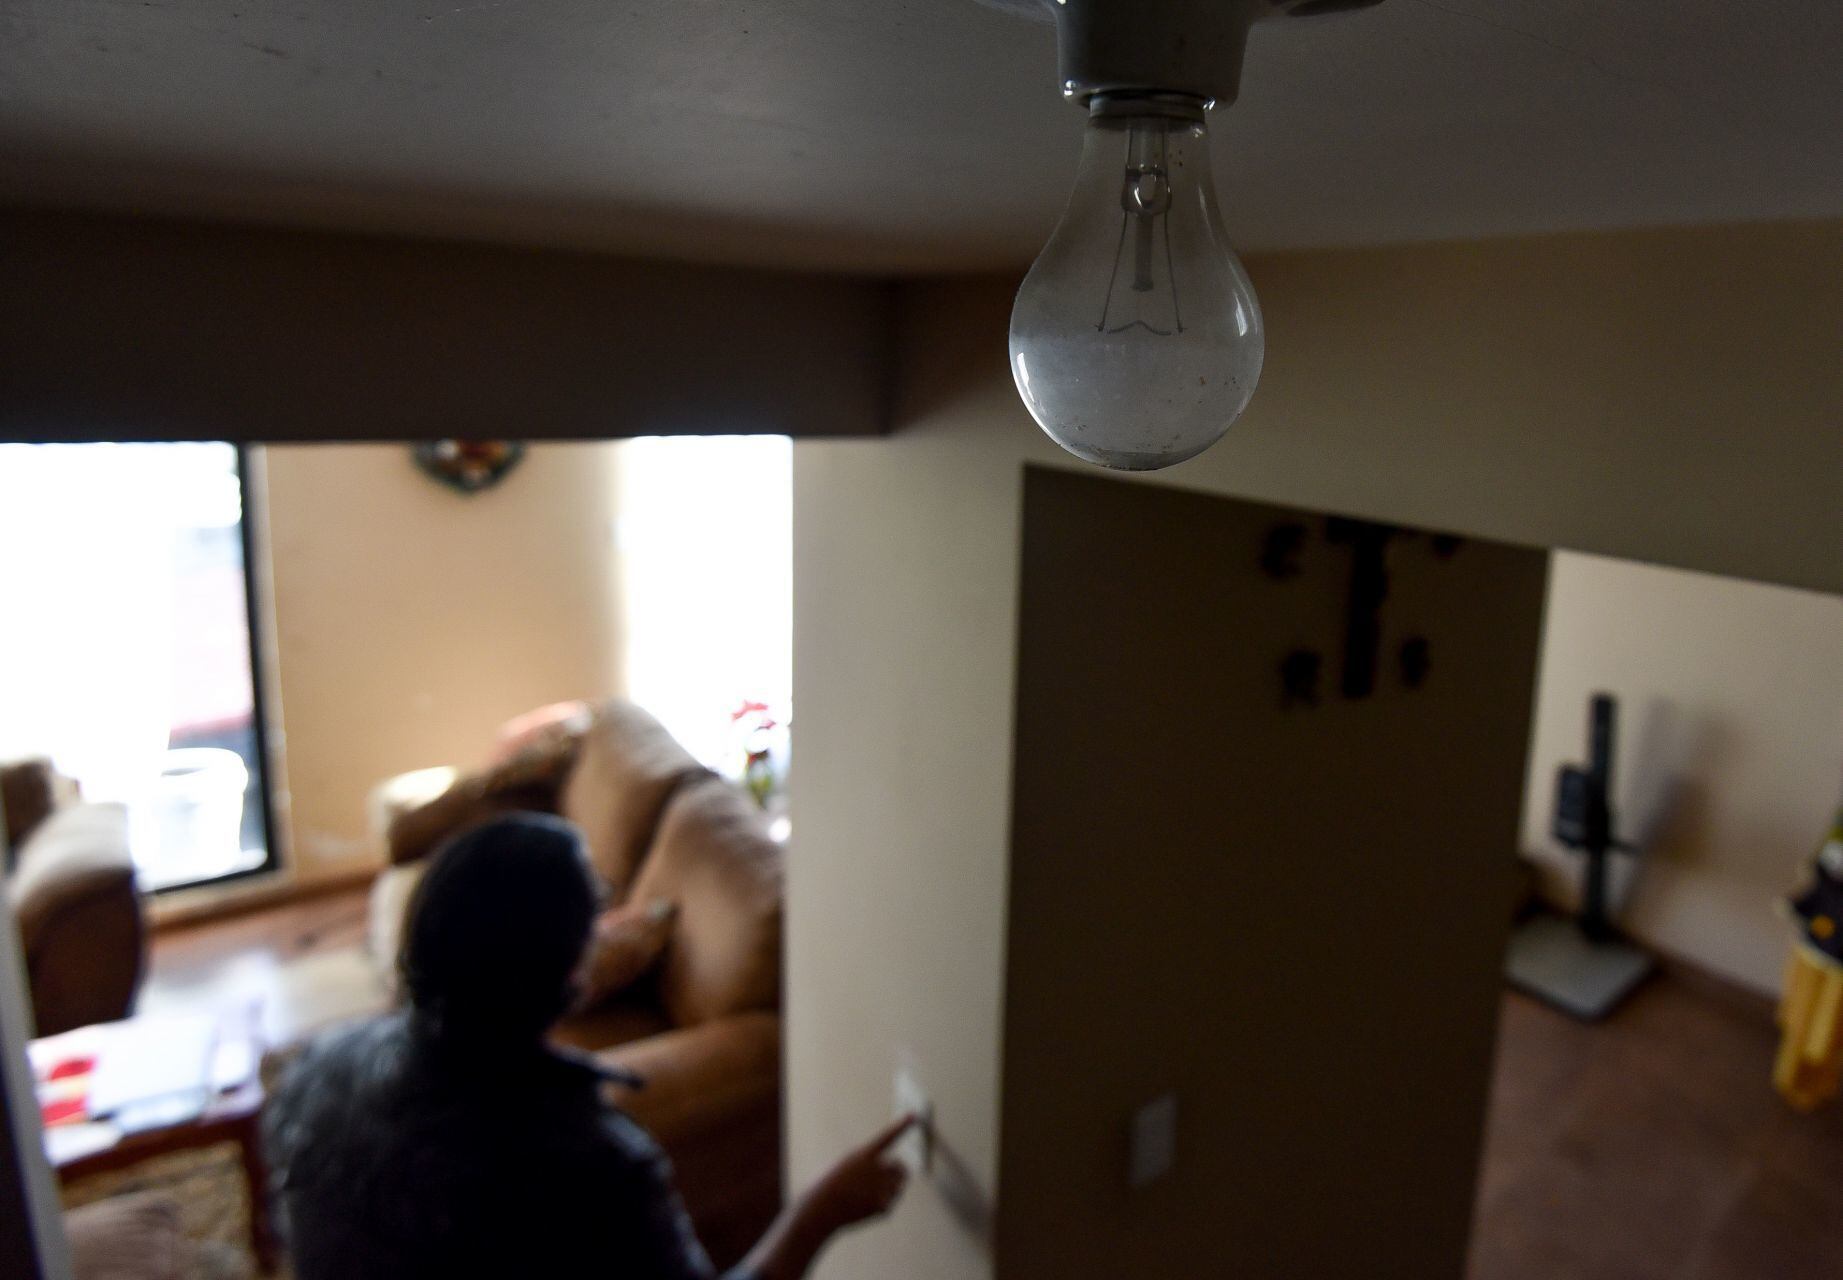 Ahorro de energía por horario de verano ha decaído en los últimos años: Rocío Nahle